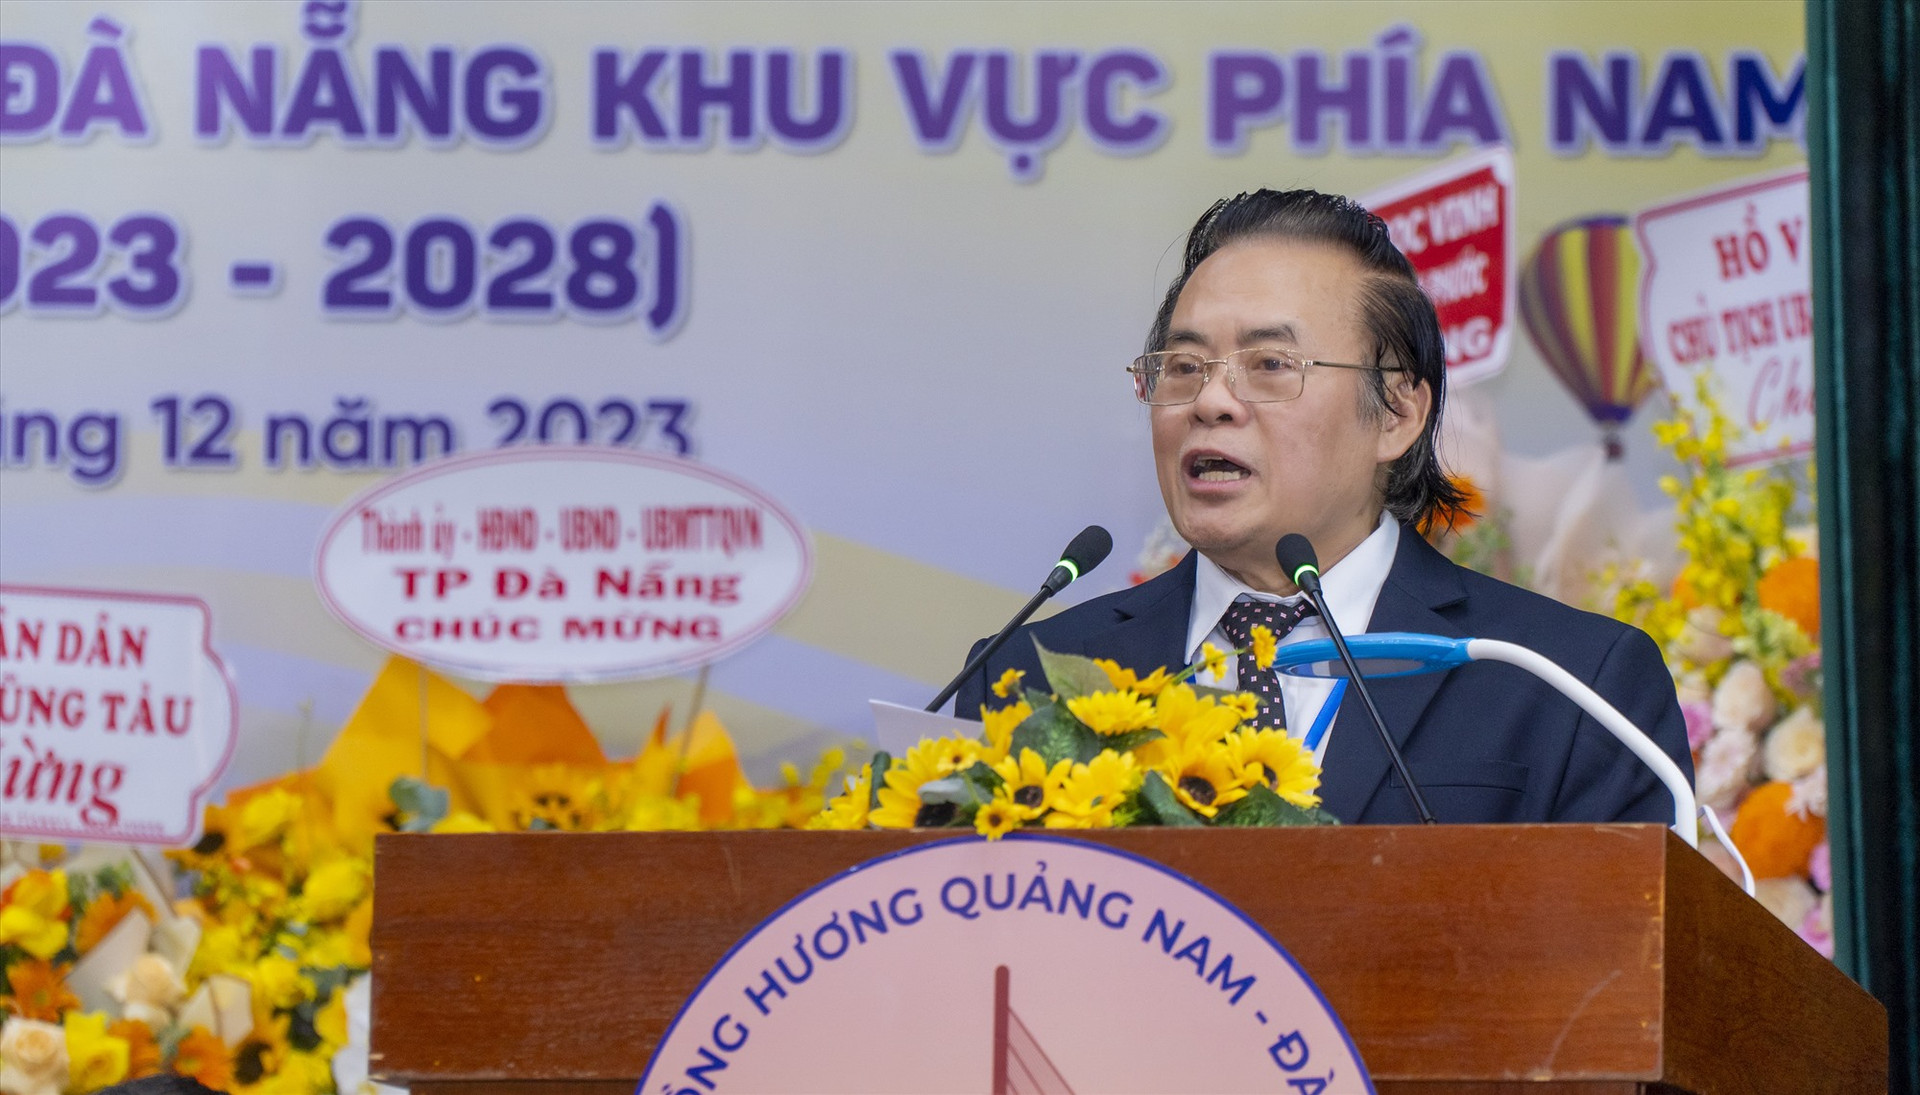 Ông Nguyễn Văn Đẩu - Chủ tịch Hội đồng hương Quảng Nam - Đà Nẵng khu vực phía Nam nhiệm kỳ II (2023 - 2028). Ảnh: P.V